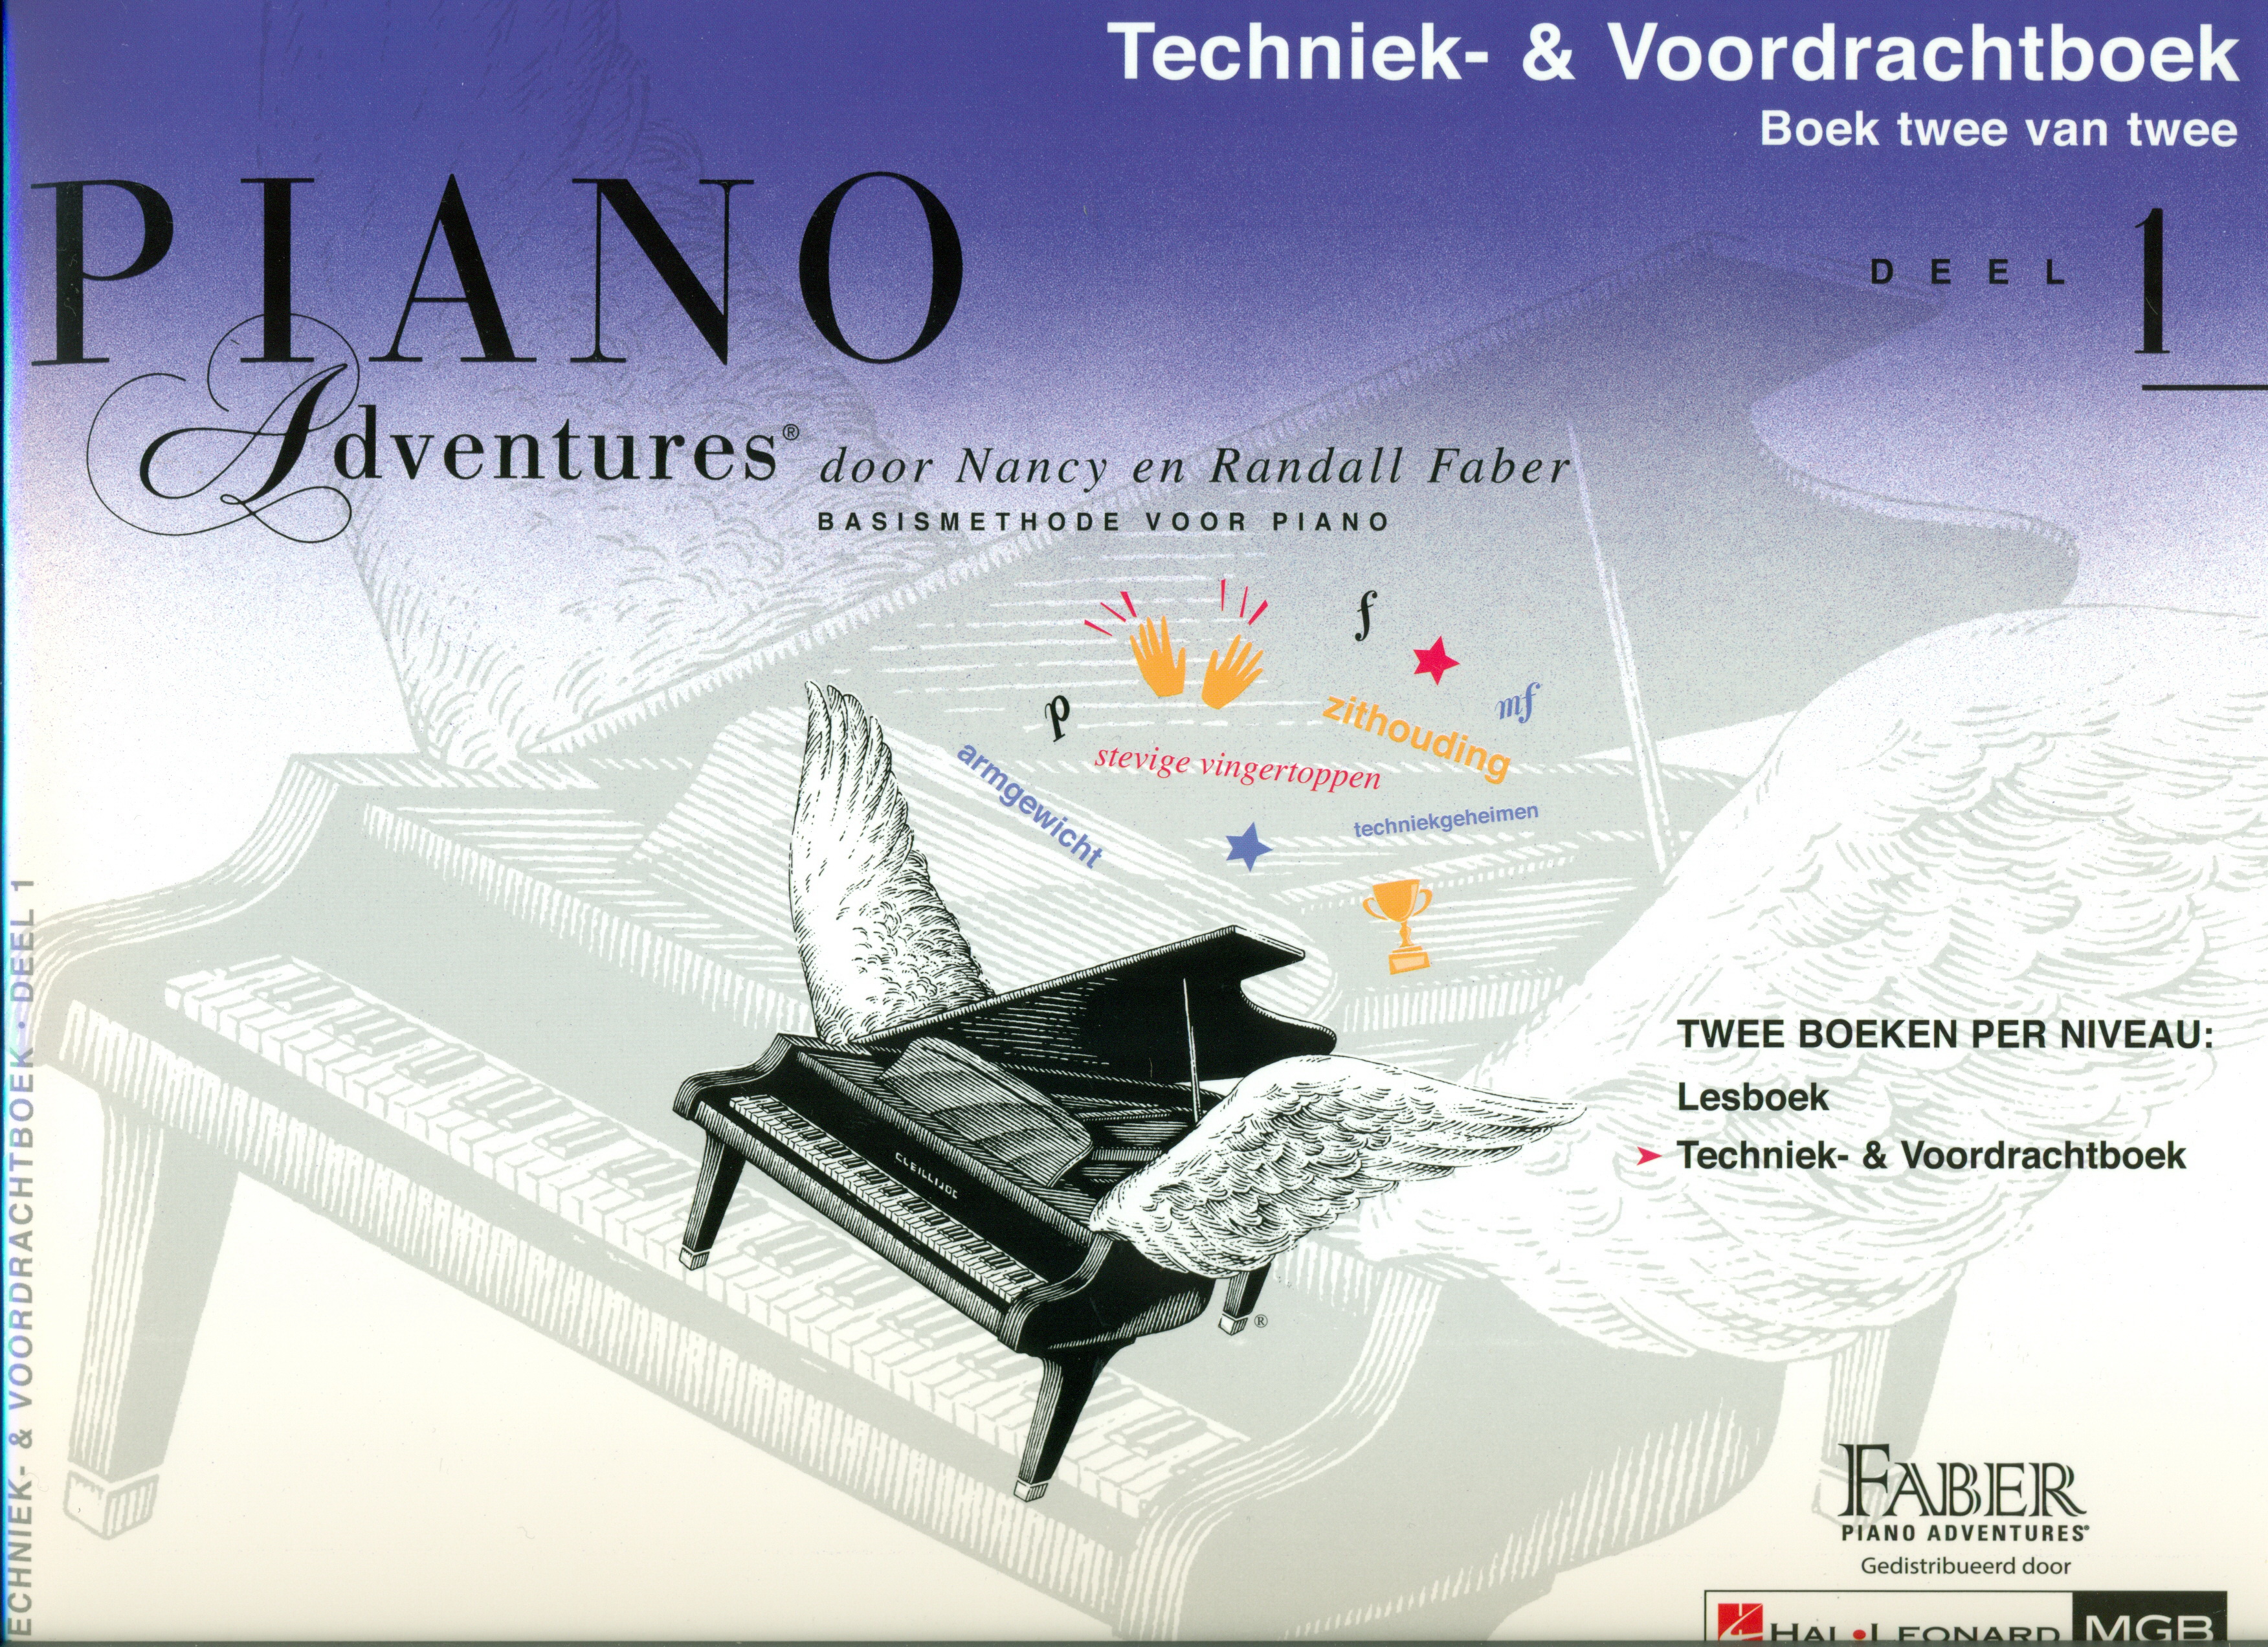 Faber Piano Adventures Boek 2 van 2 Deel 1 Techniek- & Voordrachtboek